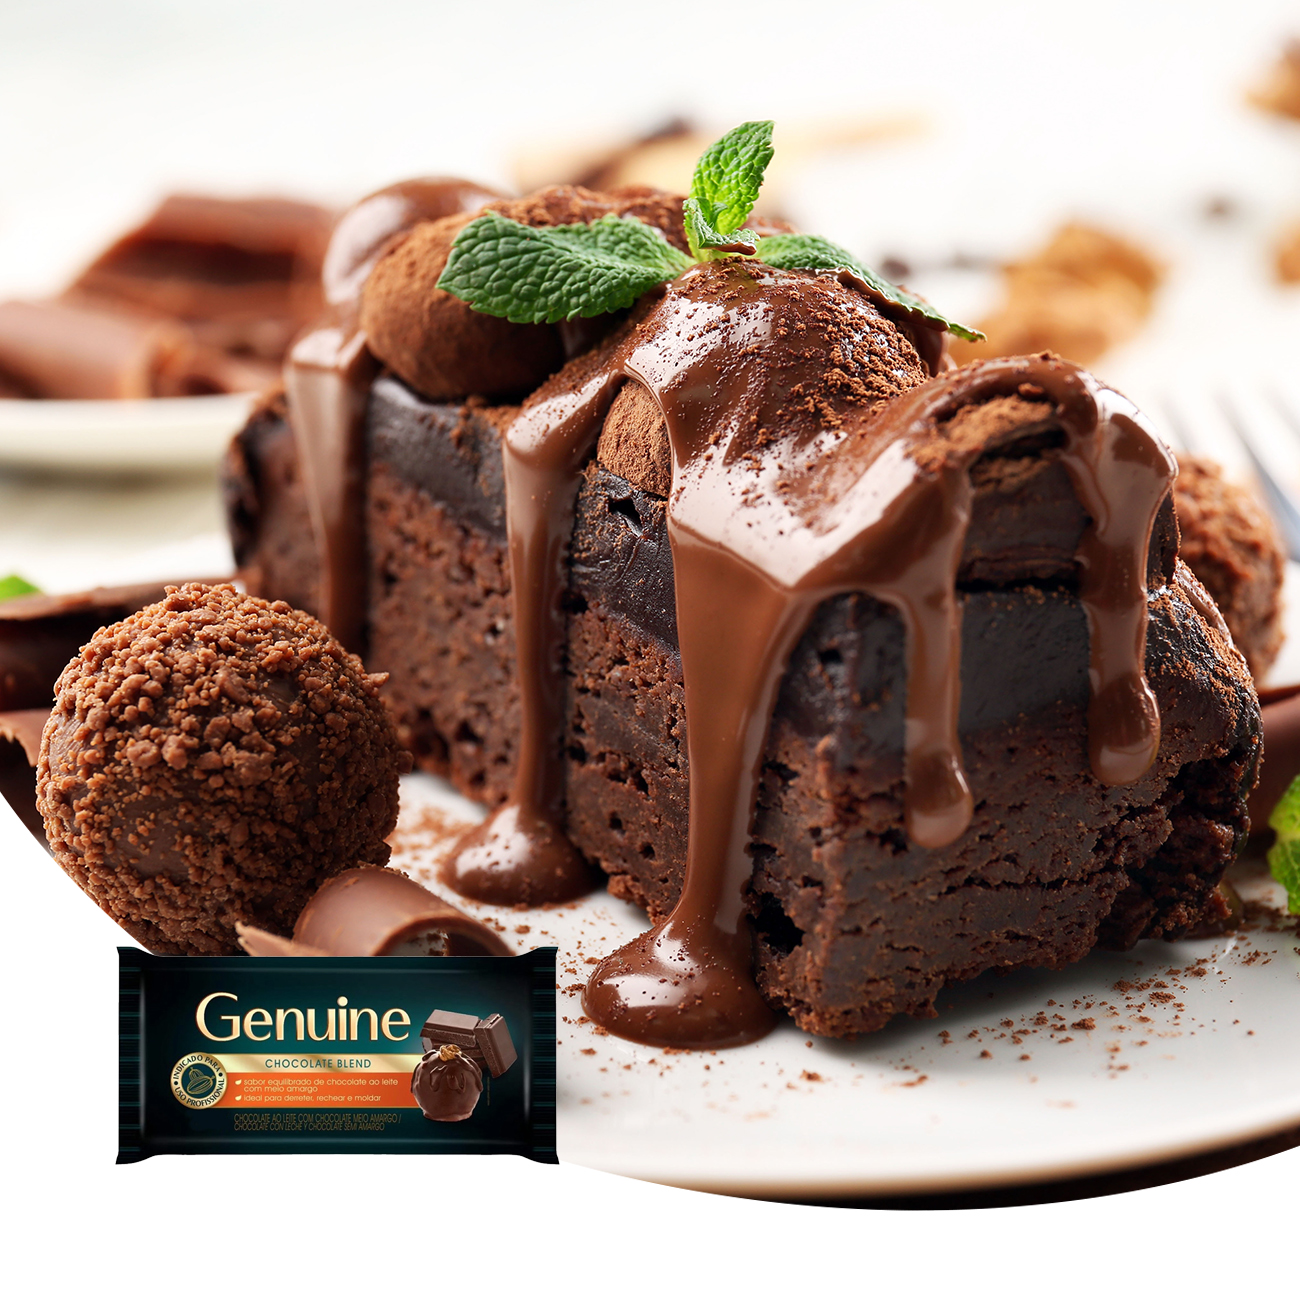 Cobertura de Chocolate em Barra Cargill Genuine Blend 2,1kg